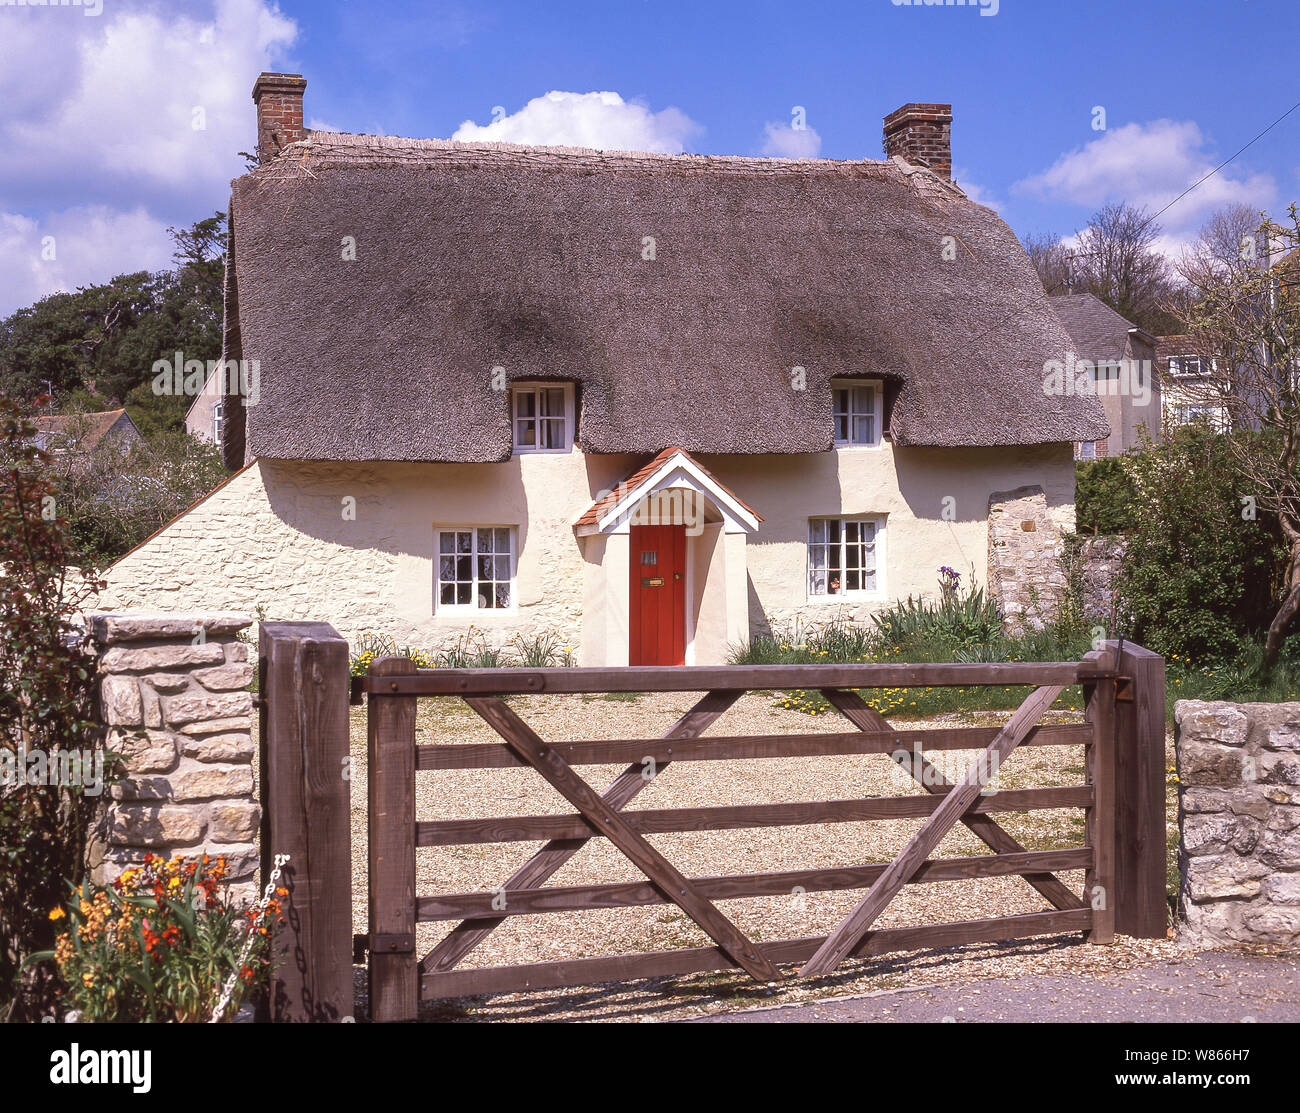 Thatched cottage, Main Road, West Lulworth, Dorset, England, United Kingdom Stock Photo